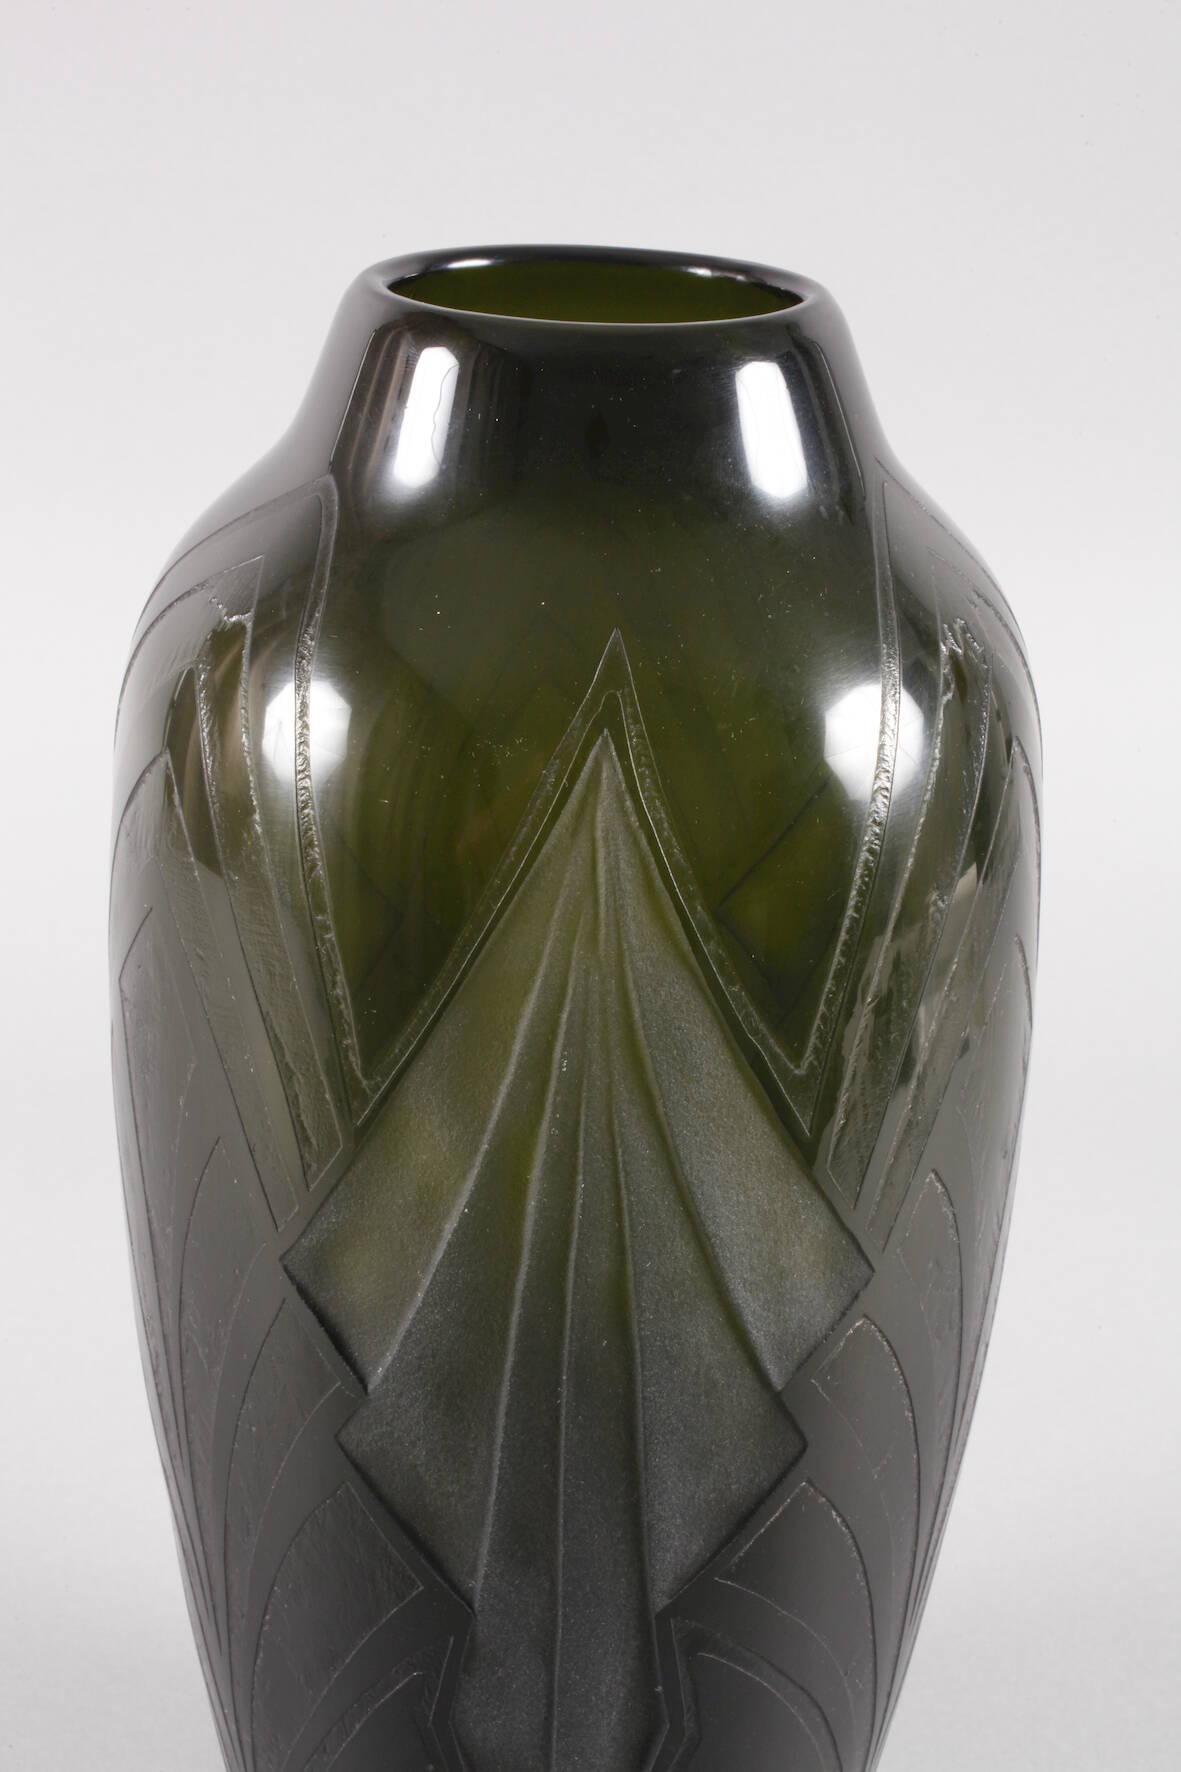 Legras große Vase Art découm 1925, Verreries de St. Denis et de Pantin Réunies, Legras & Cie., - Image 2 of 4